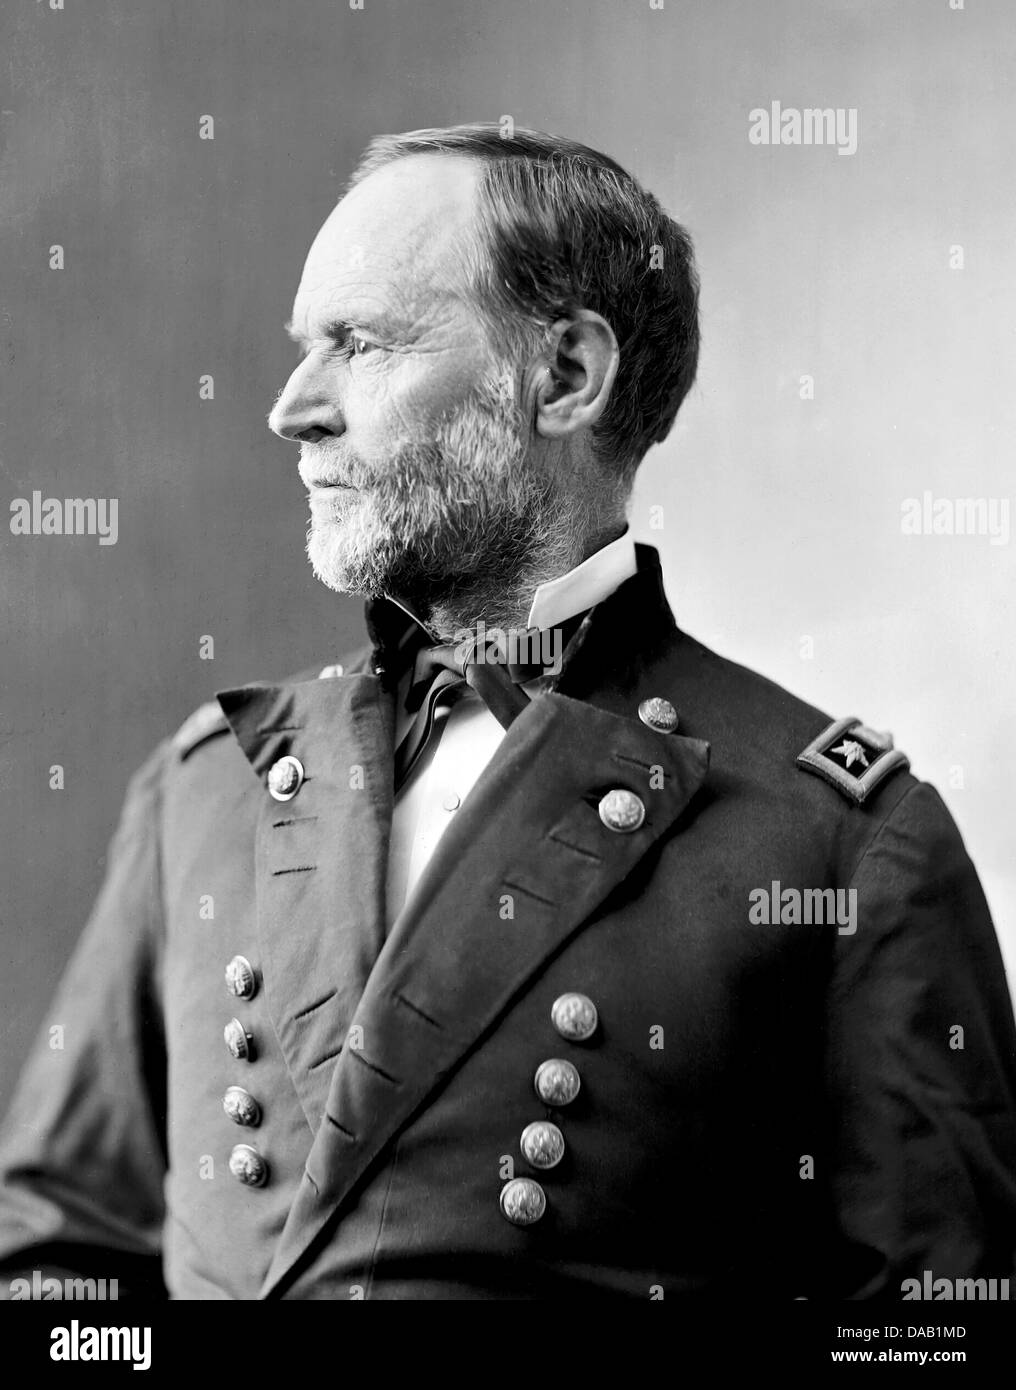 WILLIAM TECUMSEH SHERMAN (1820-1891) amerikanischen Soldaten der Union Army General im Bürgerkrieg diente. Stockfoto